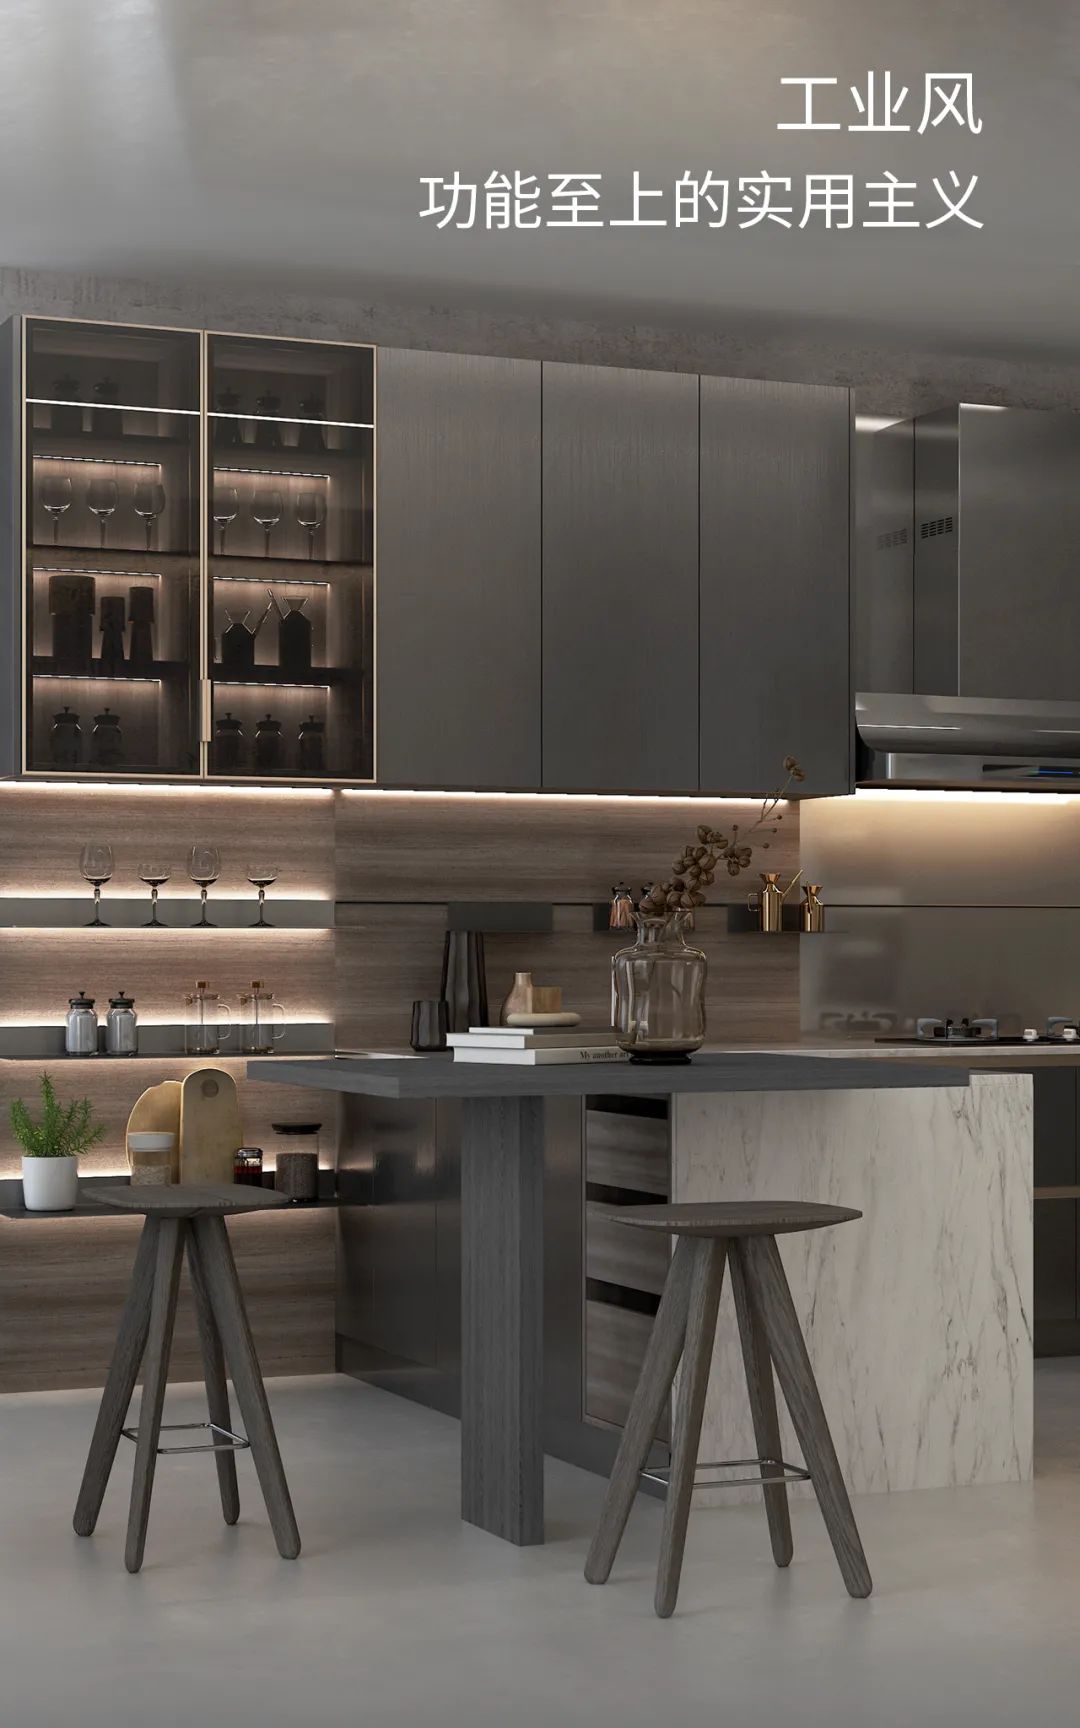 欧派橱柜2021欧派新品来袭精选3款厨房设计案例照搬回家不出错